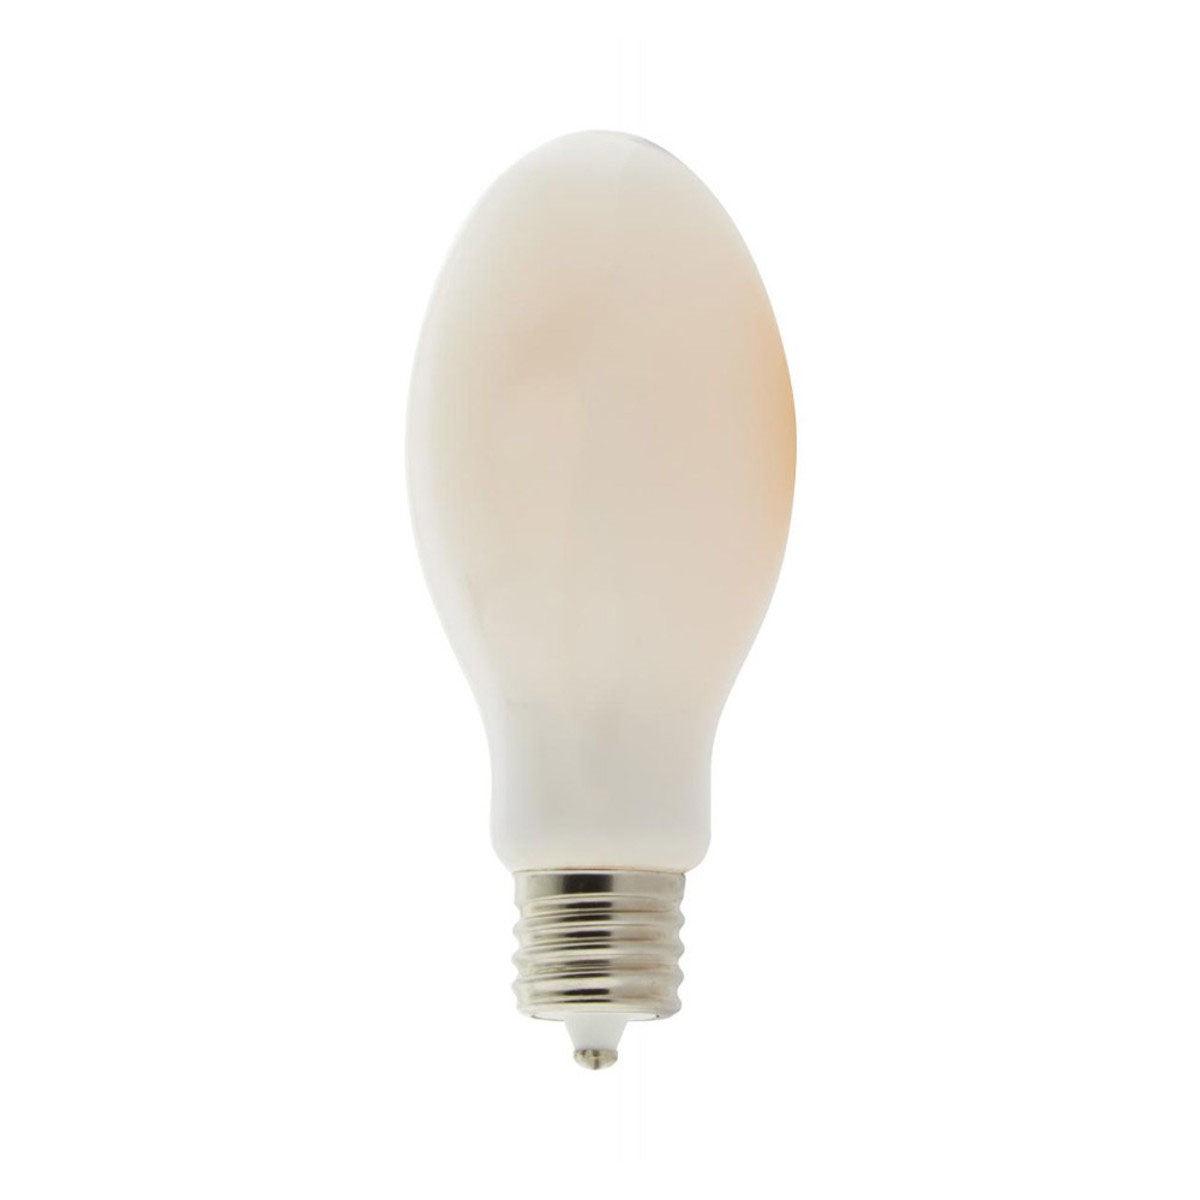 LED ED28 Bulb, 42 Watt, 6000 Lumens, 3000K, EX39 Mogul Extended Base, White Frosted Finish - Bees Lighting